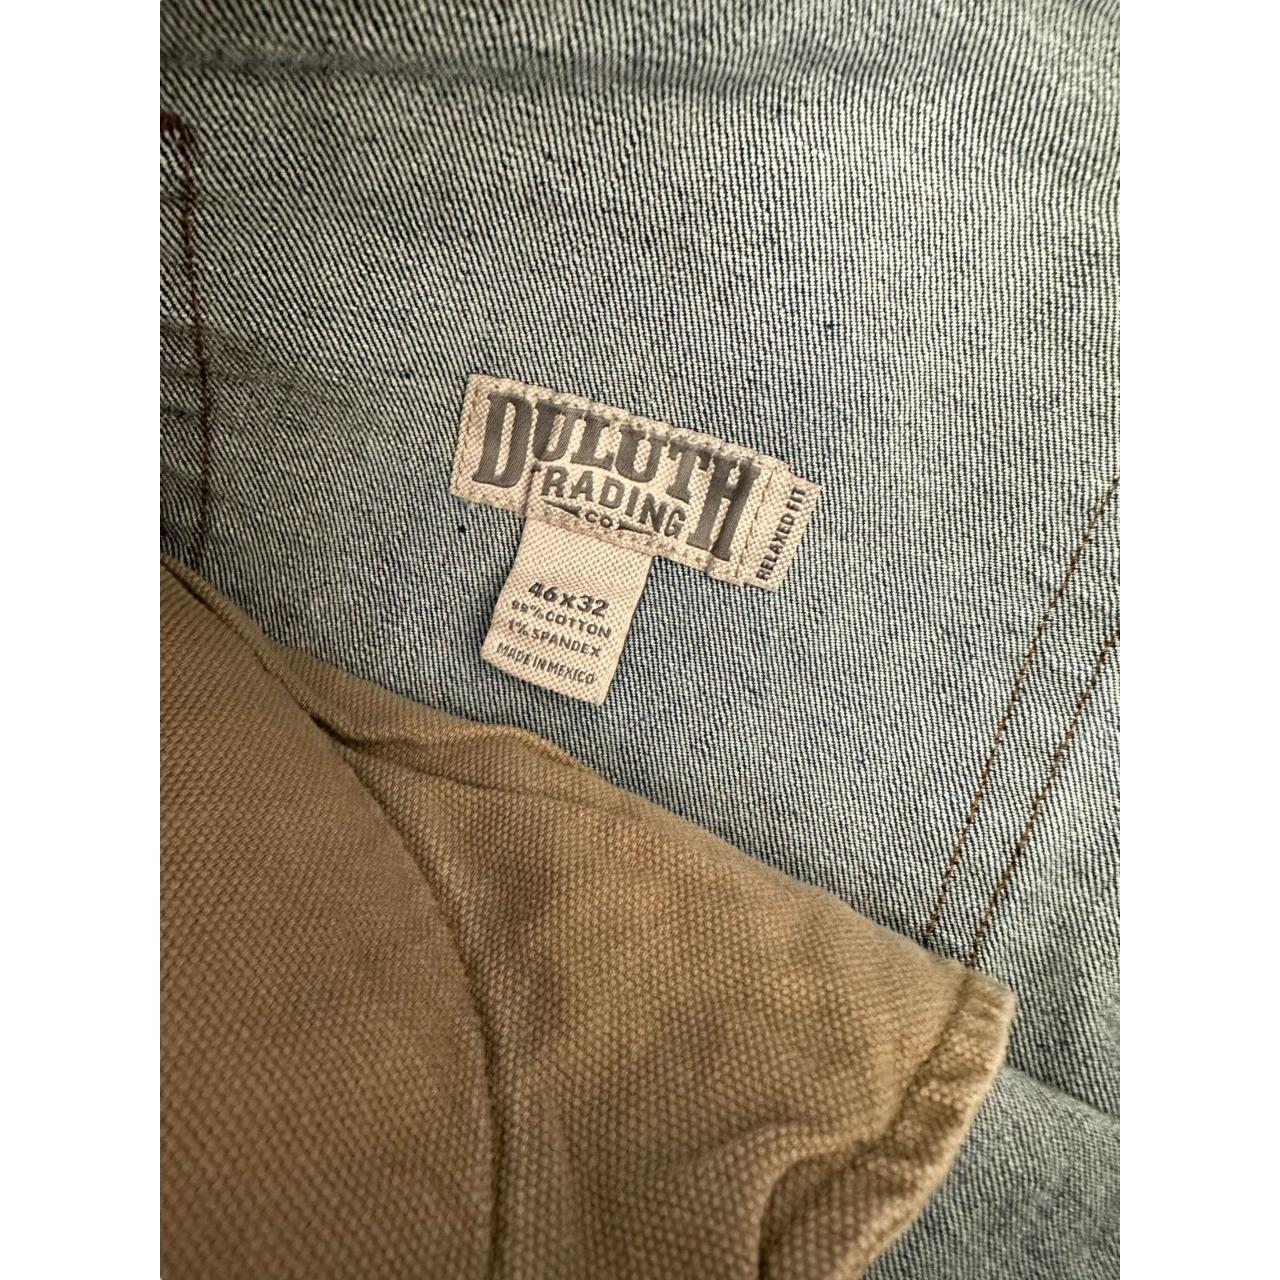 Men’s Duluth Flex Ballroom Jeans 46x32 relaxed fit - Depop